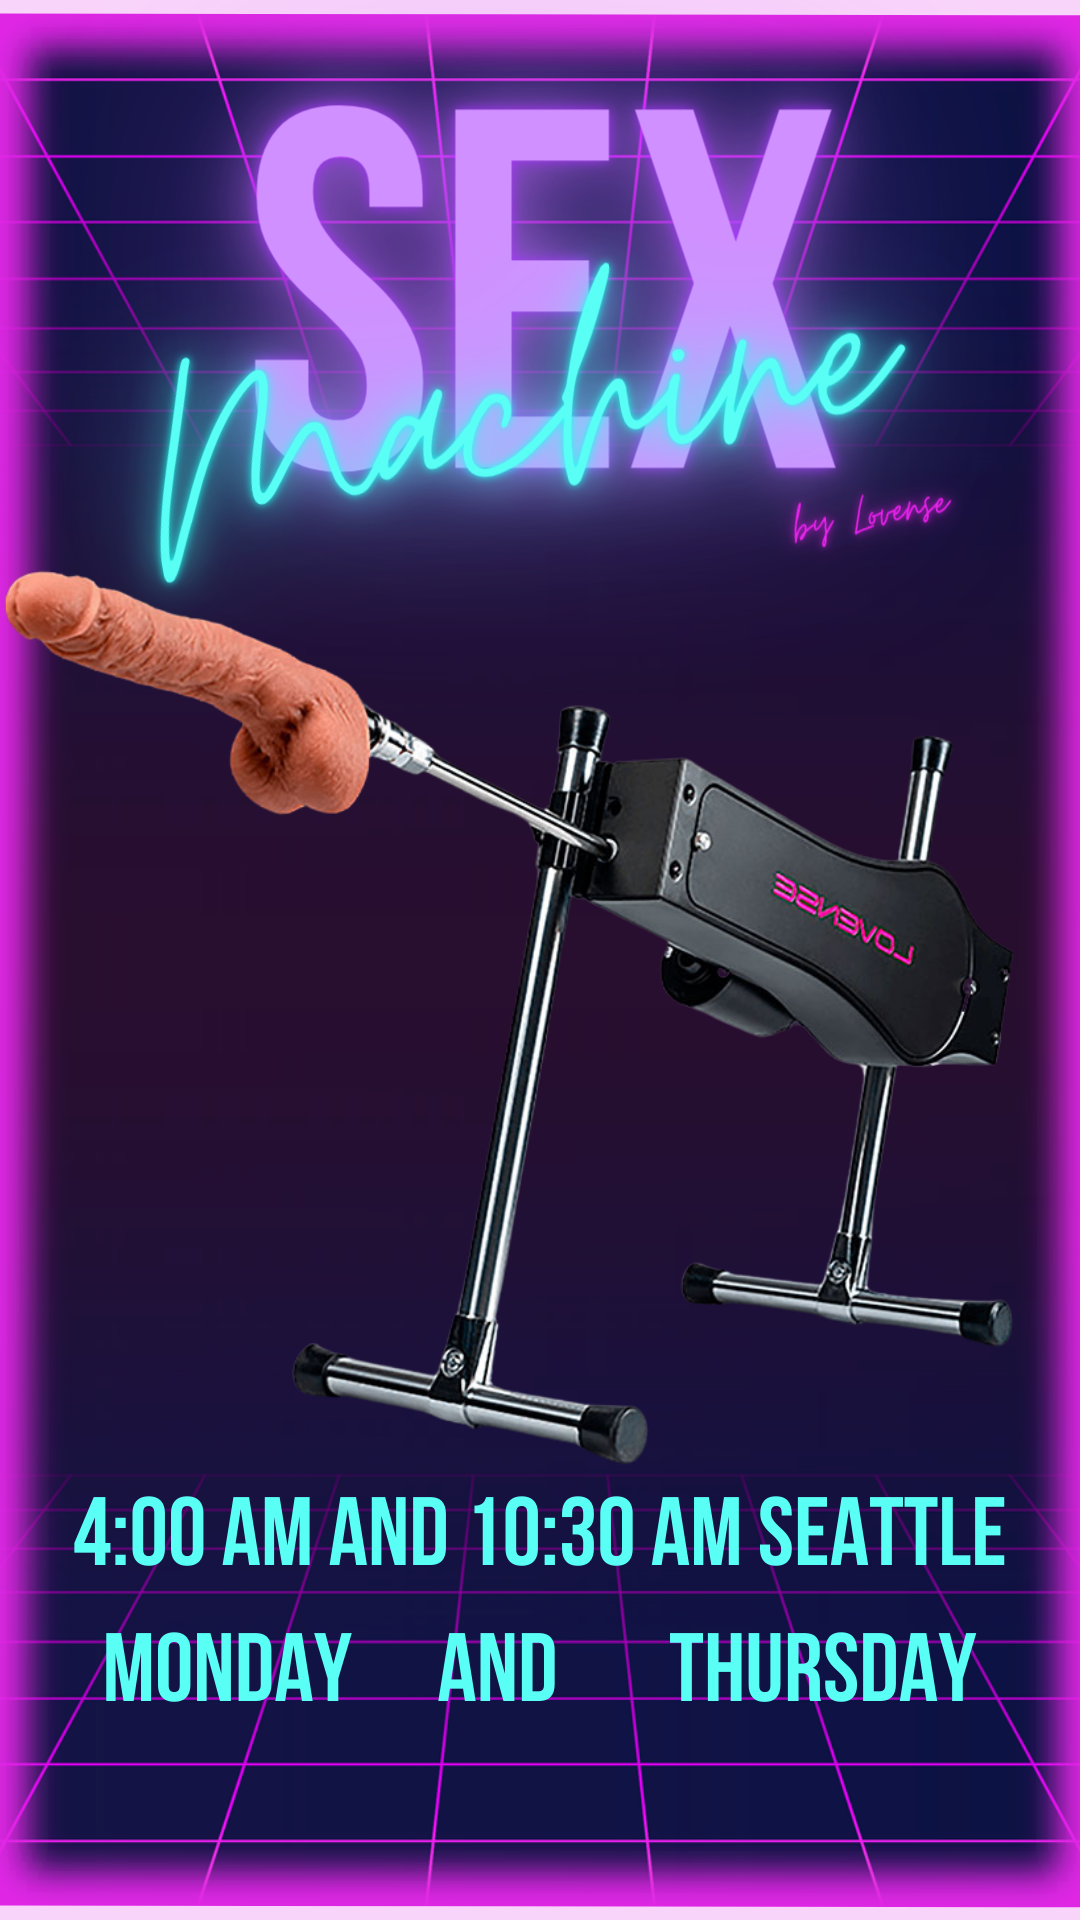 VioletMontes sex machine image: 1